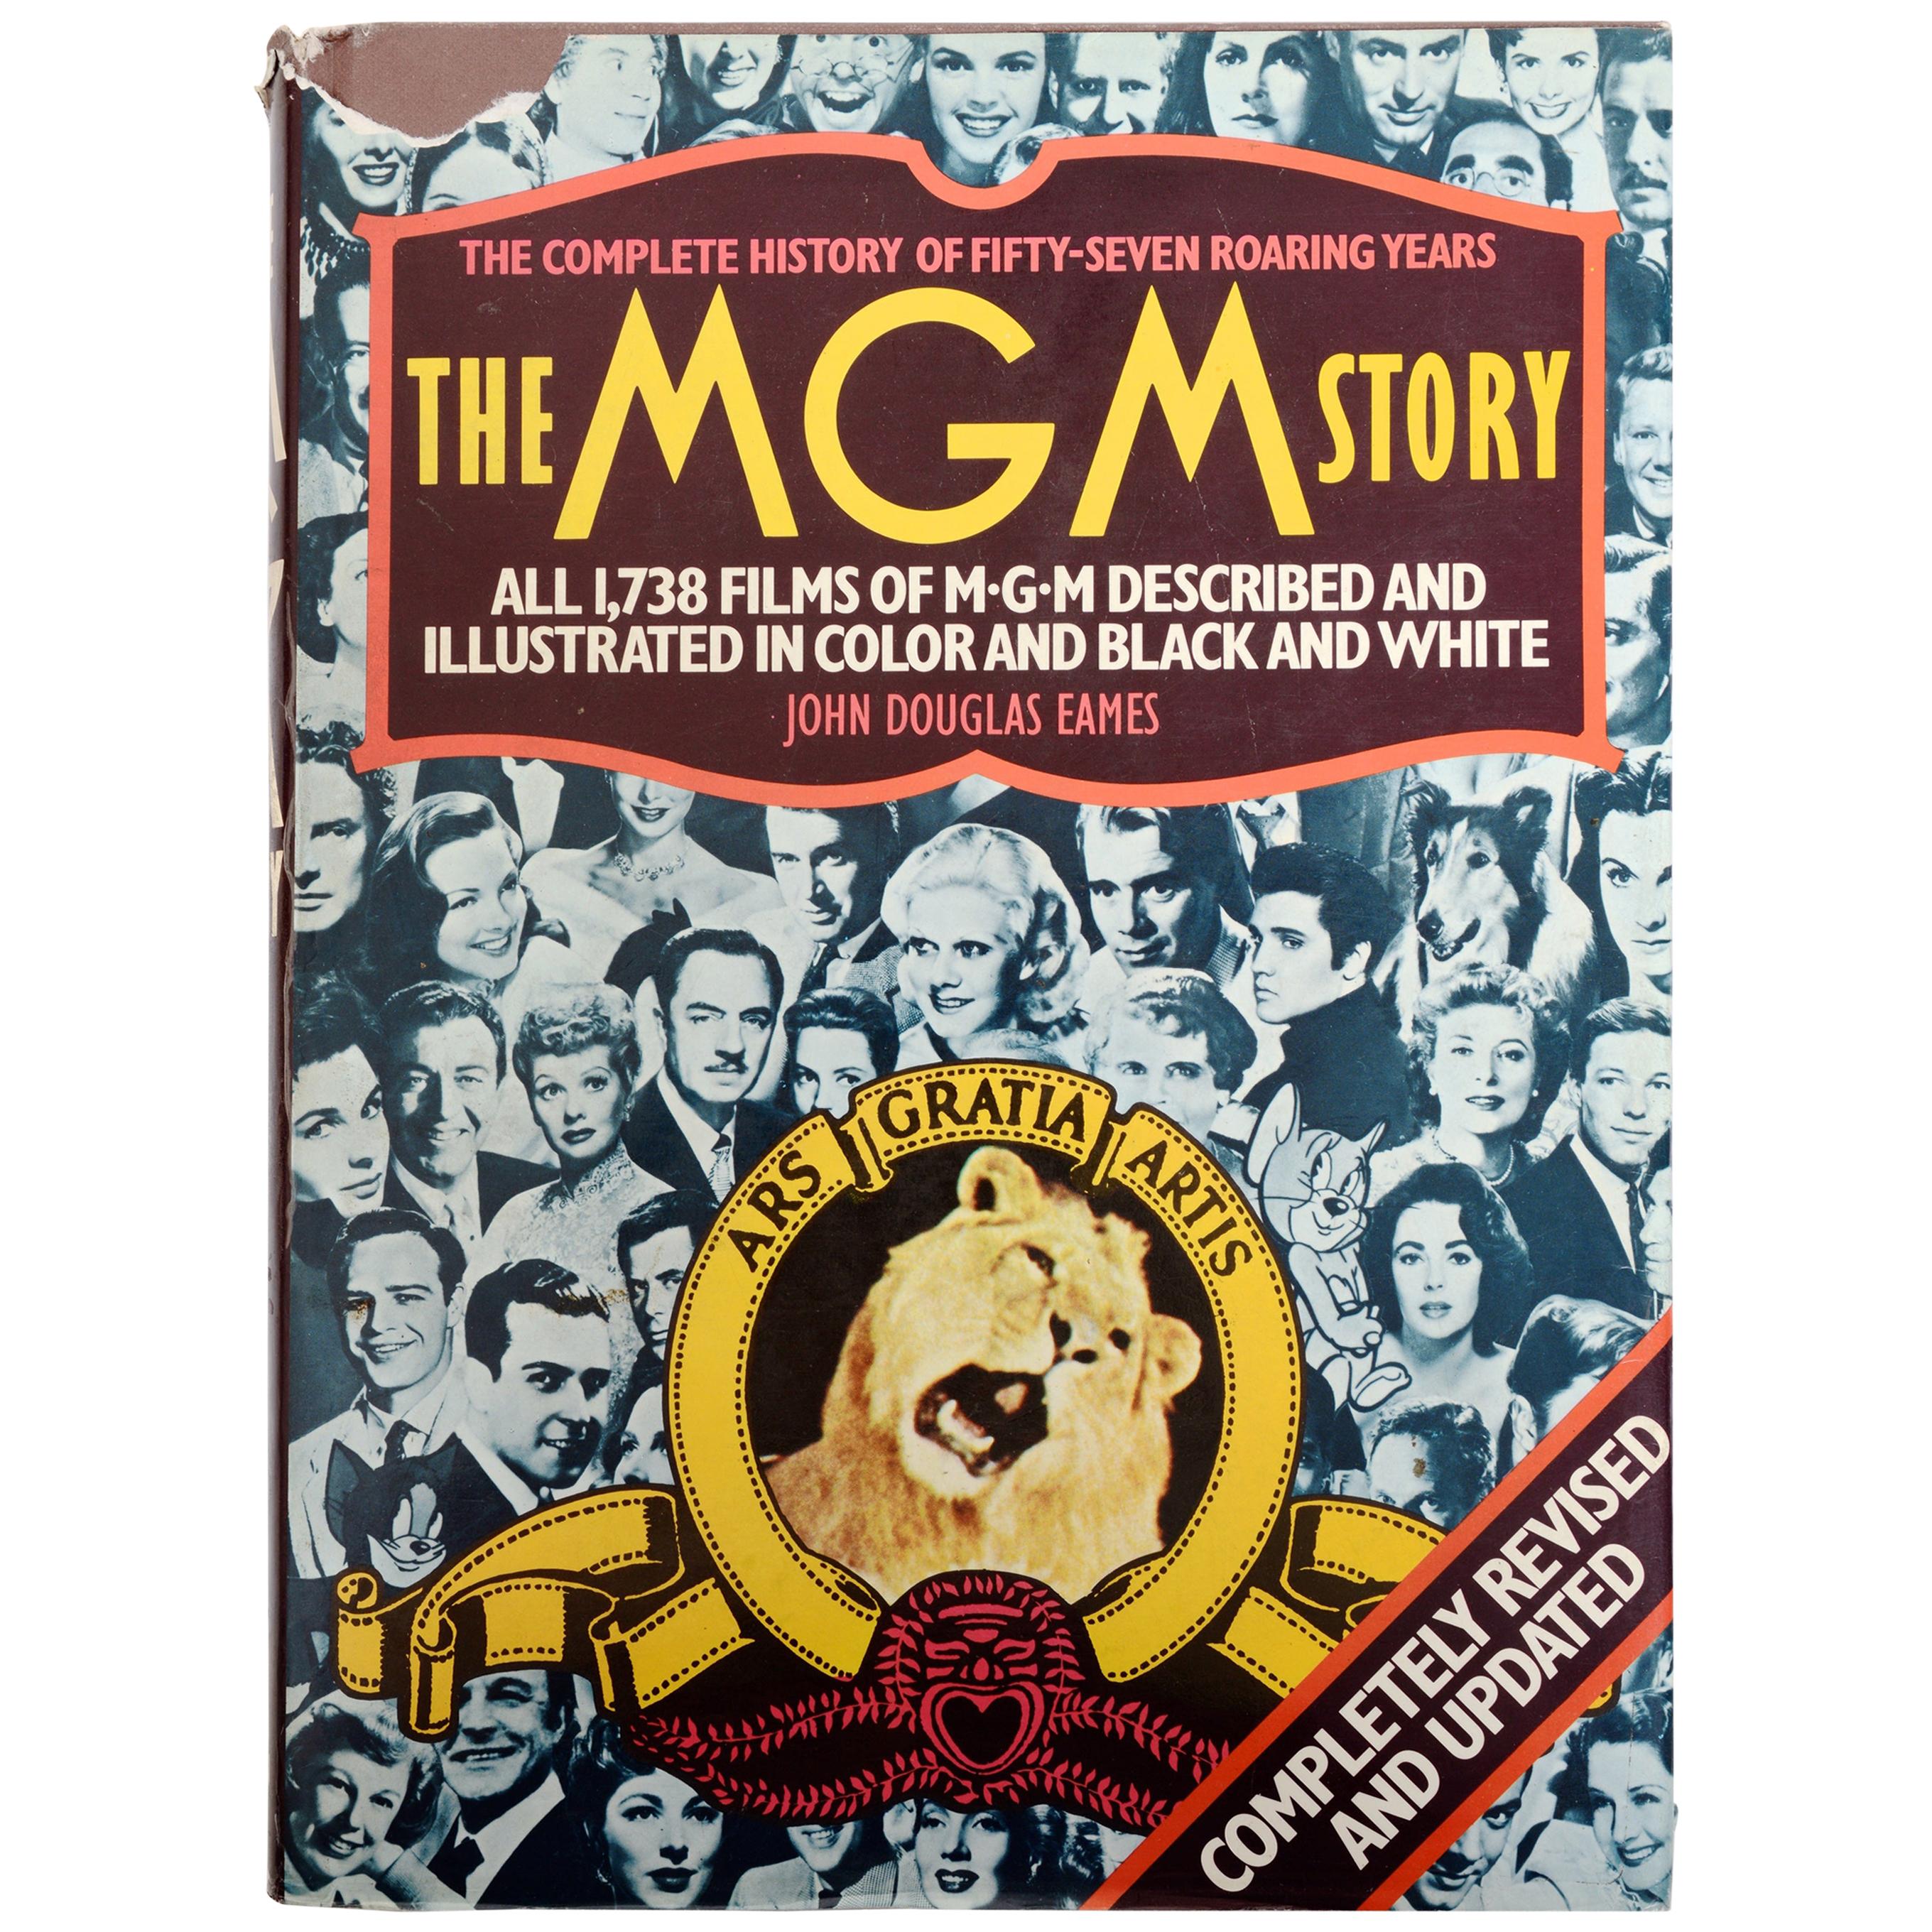 L'histoire complète du MGM The Complete History of Fifty Roaring Years (L'histoire complète des cinquante années de révolution), par John Eames